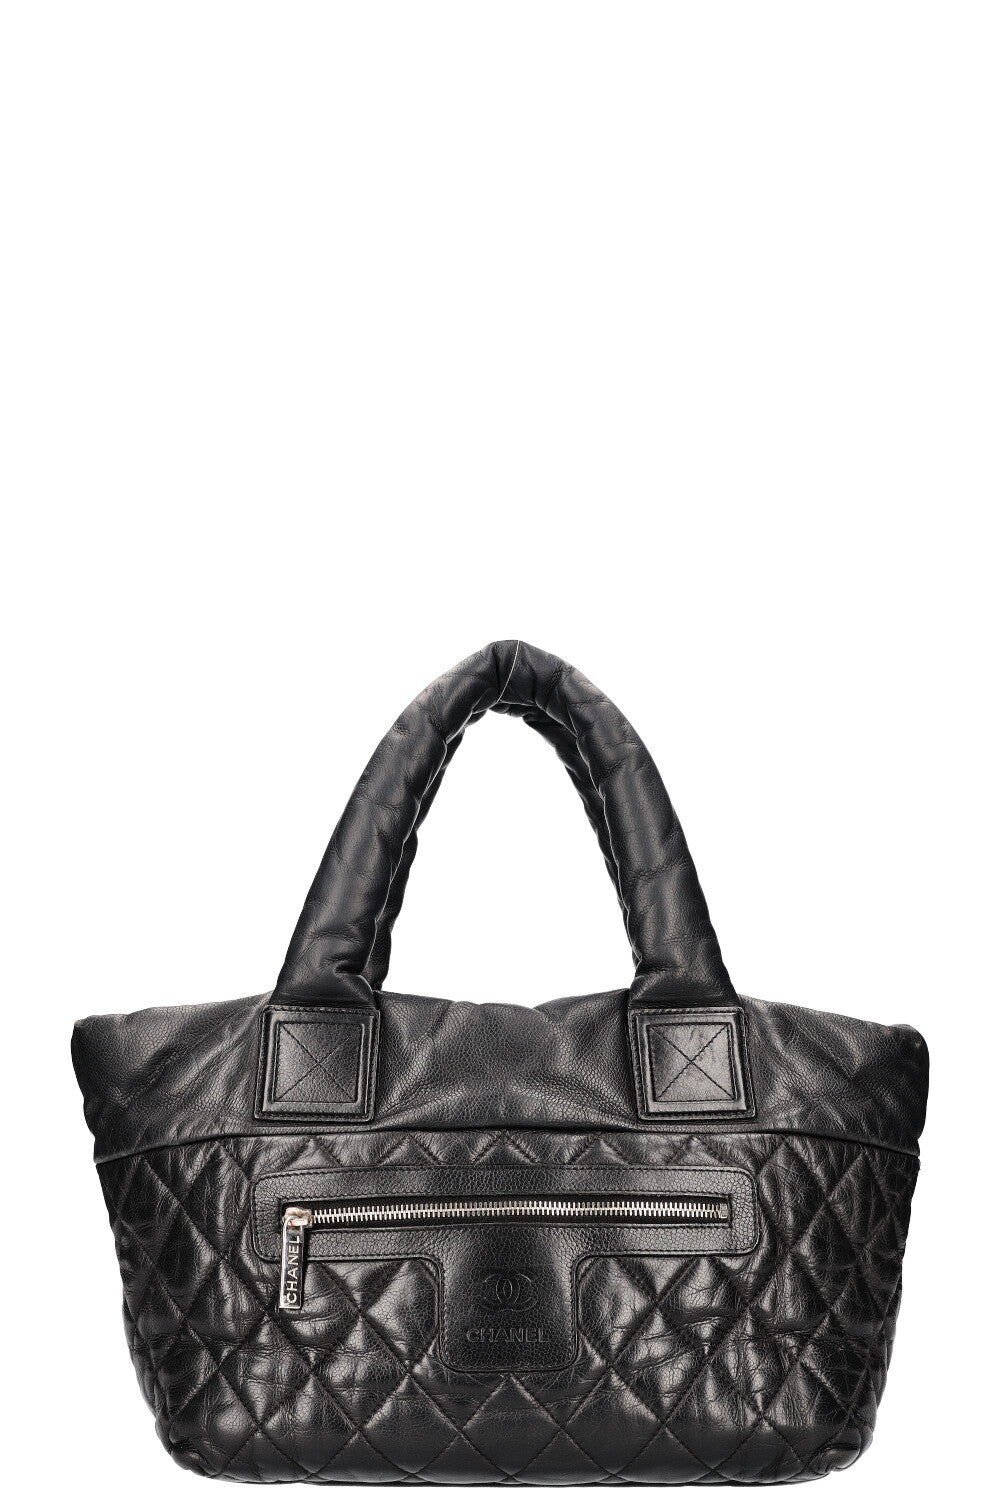 CHANEL Coco Coccoon Handbag Black